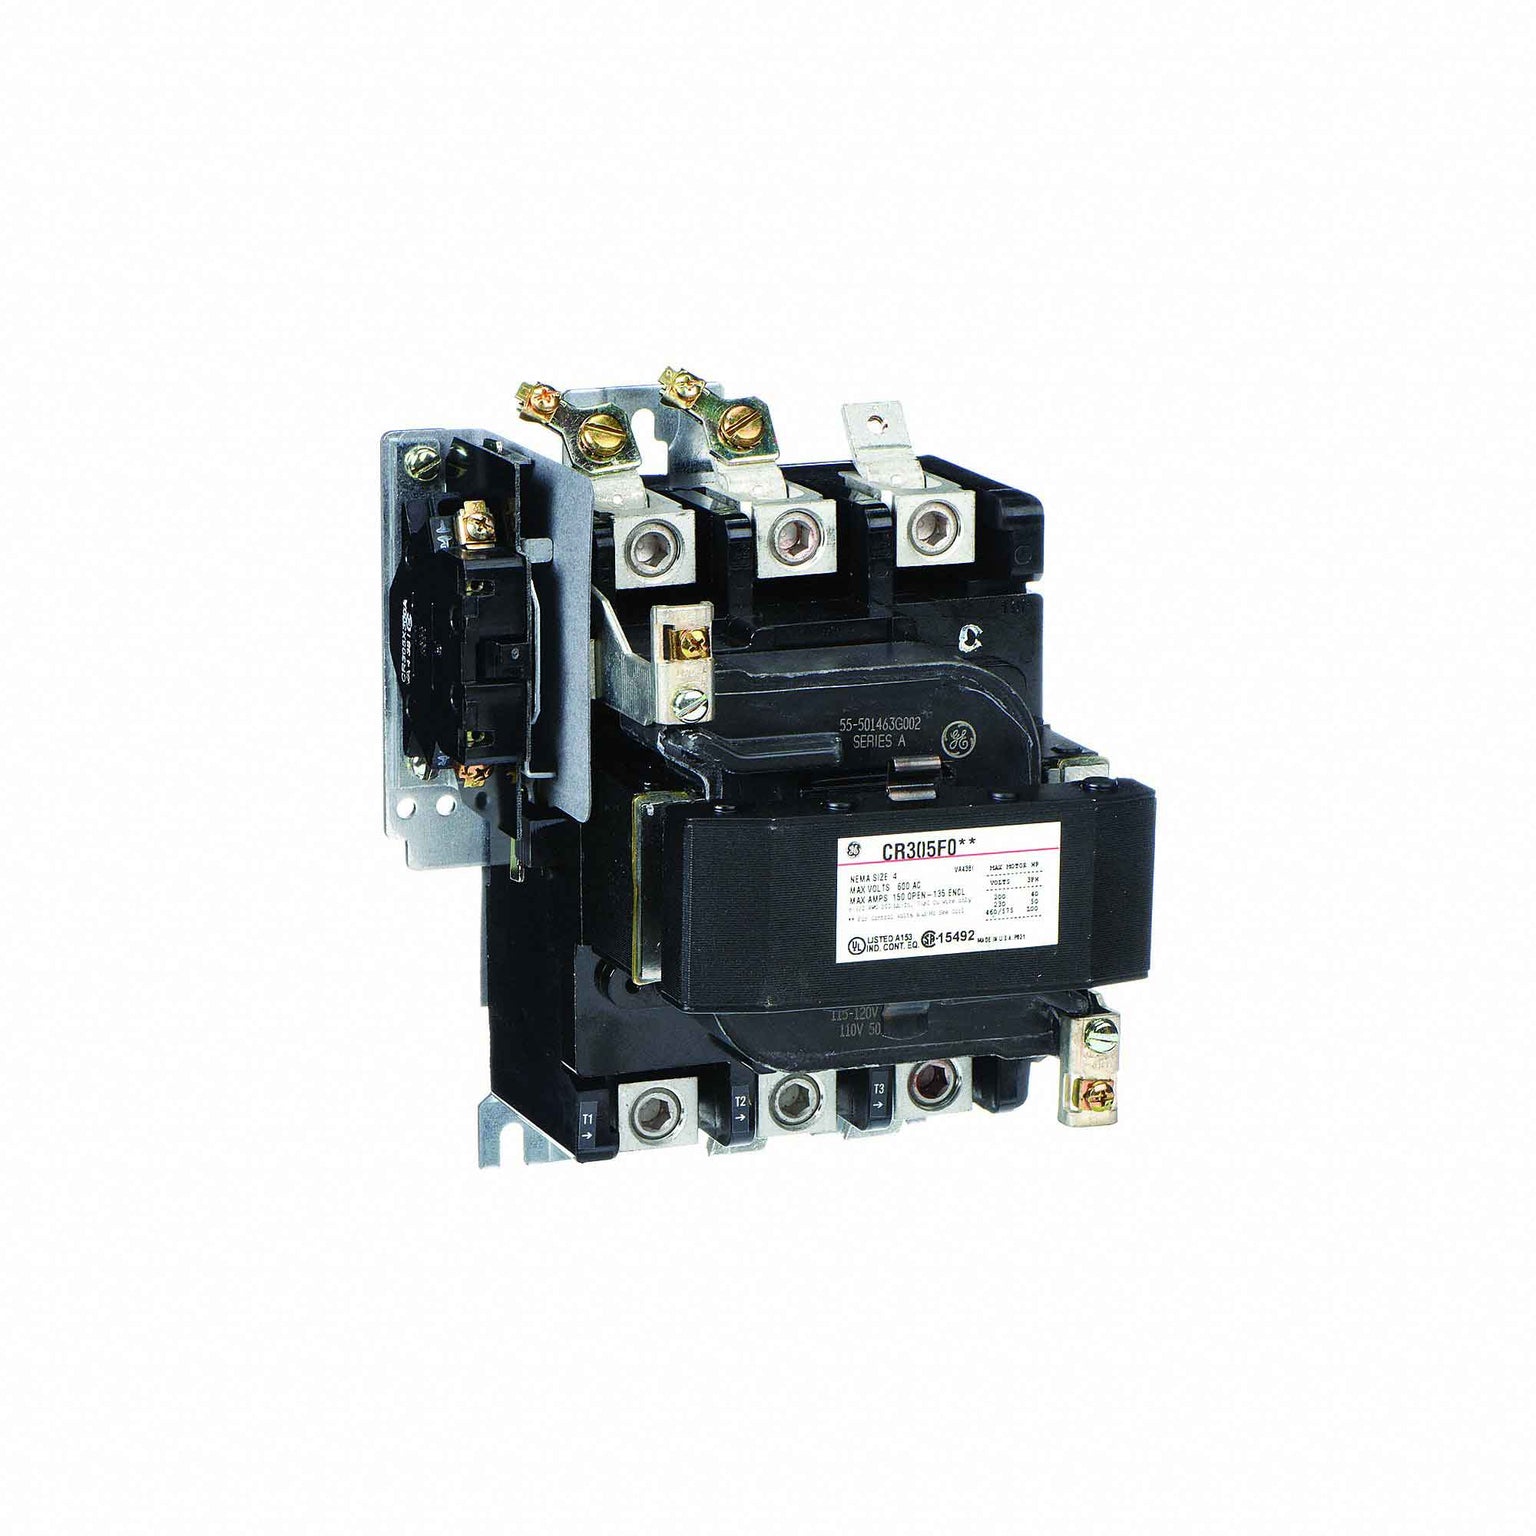 CR305F002 - General Electrics - Contactor